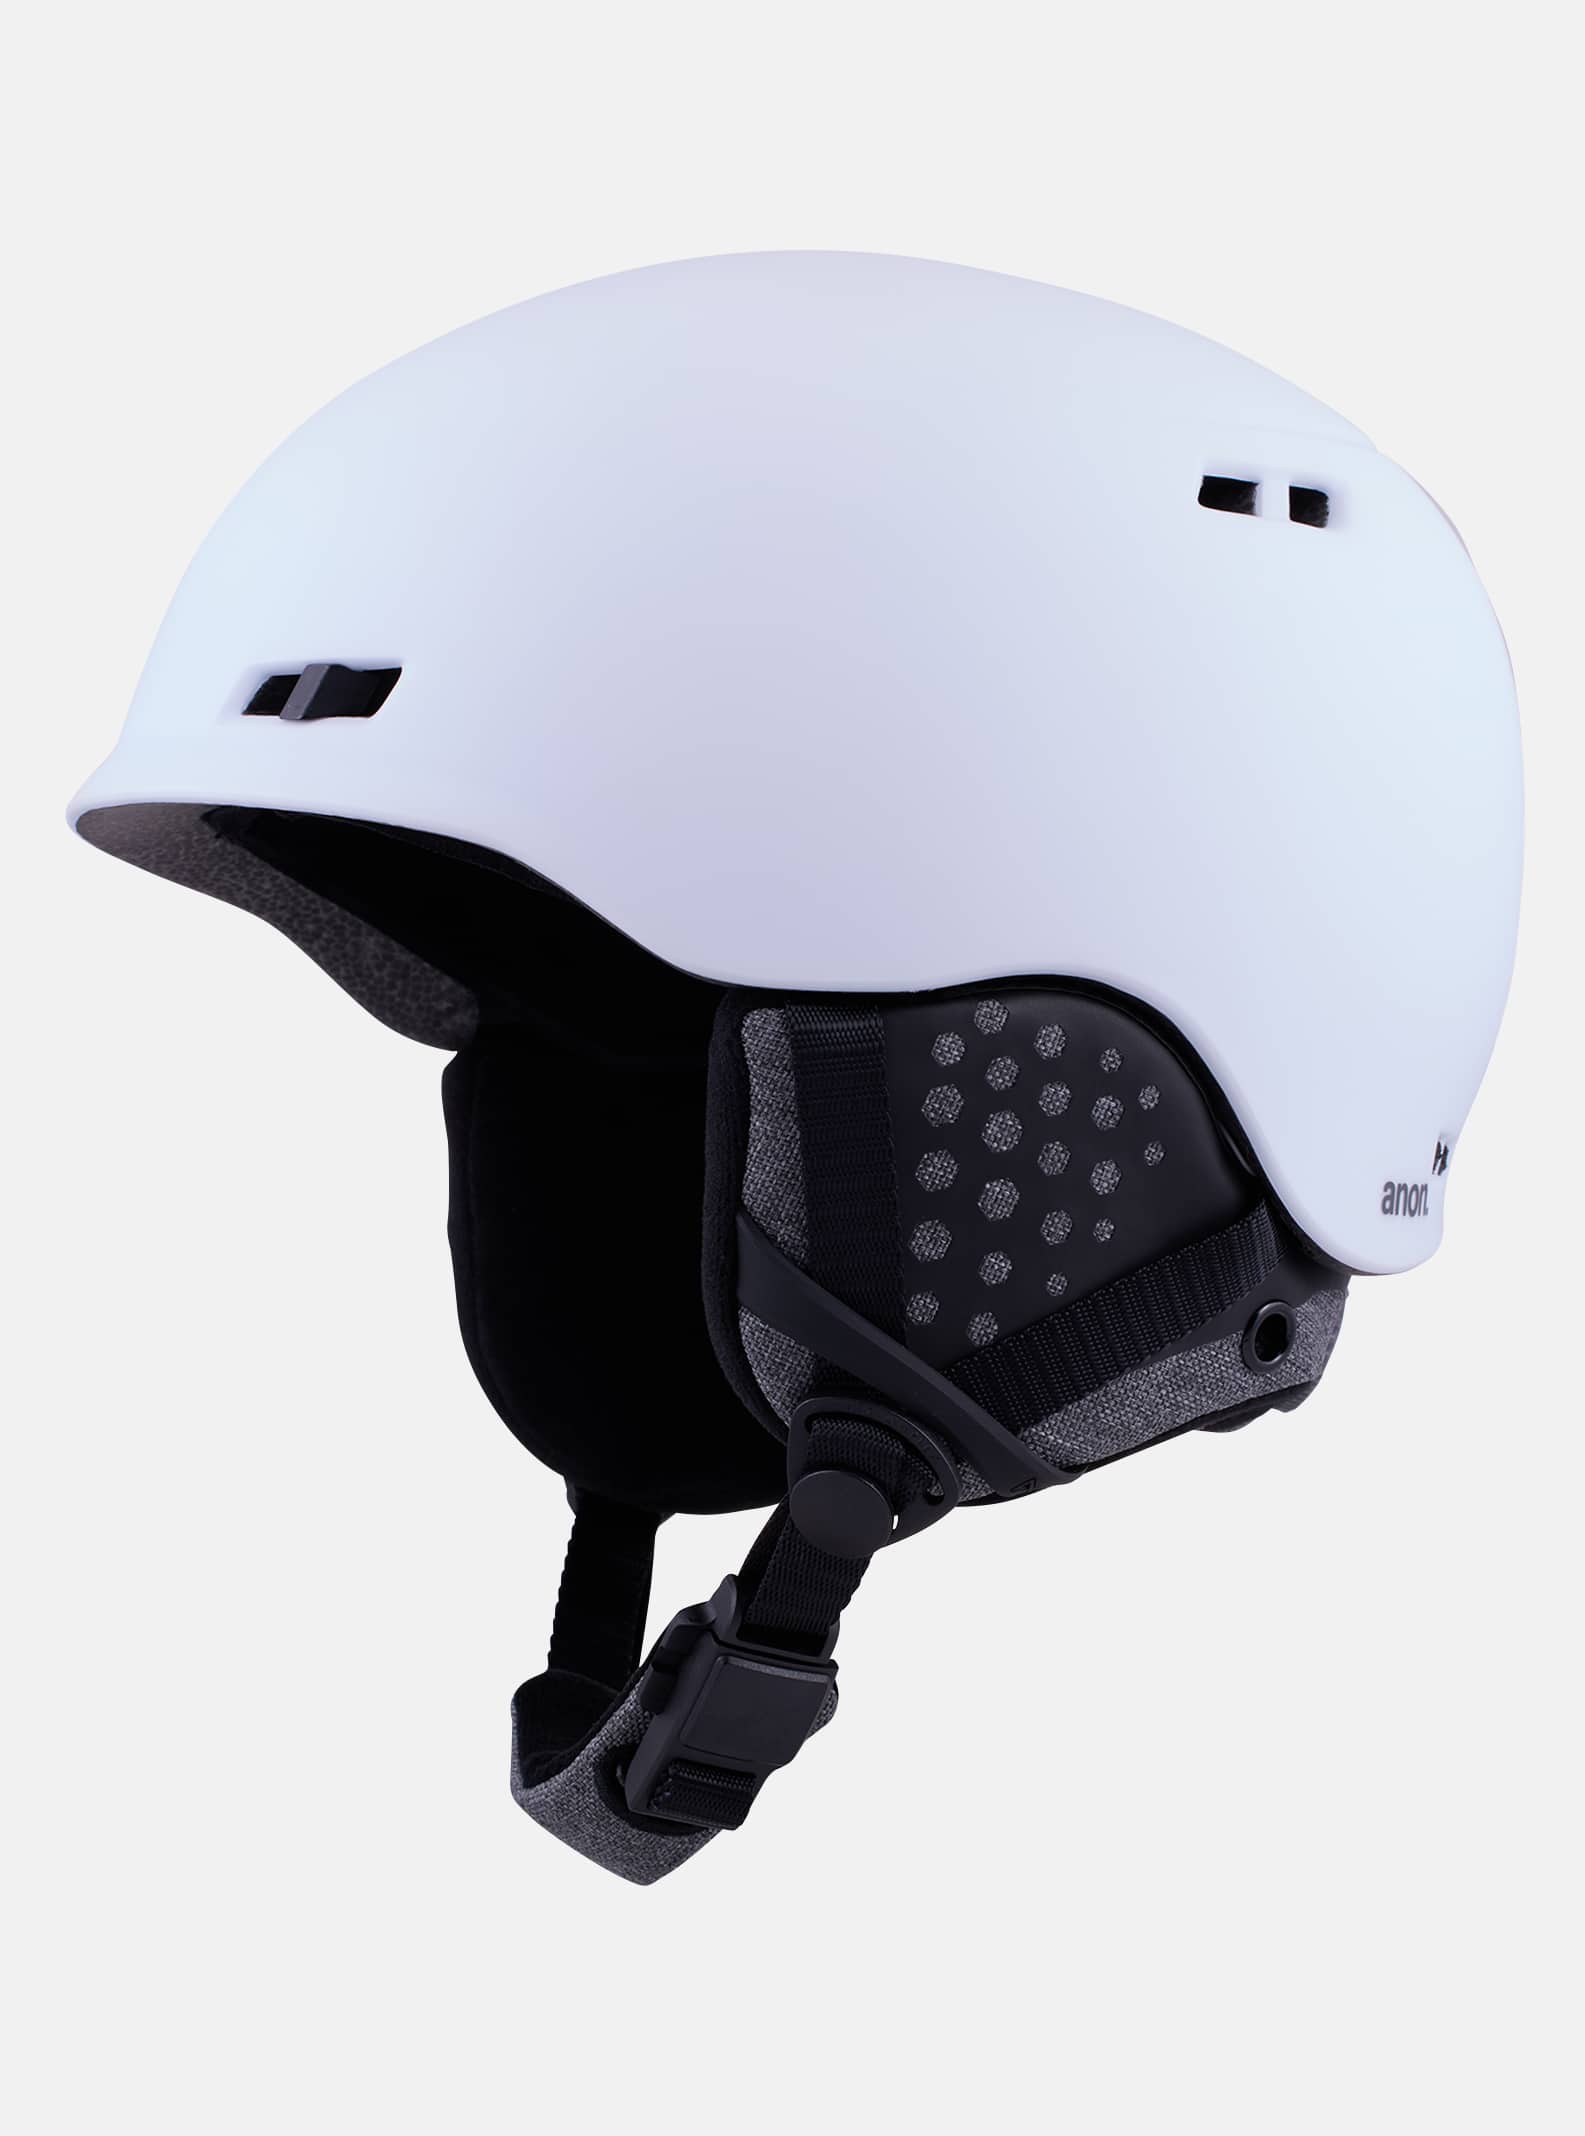 アノン　ANON ヘルメット　HERO2.0 スノーボード